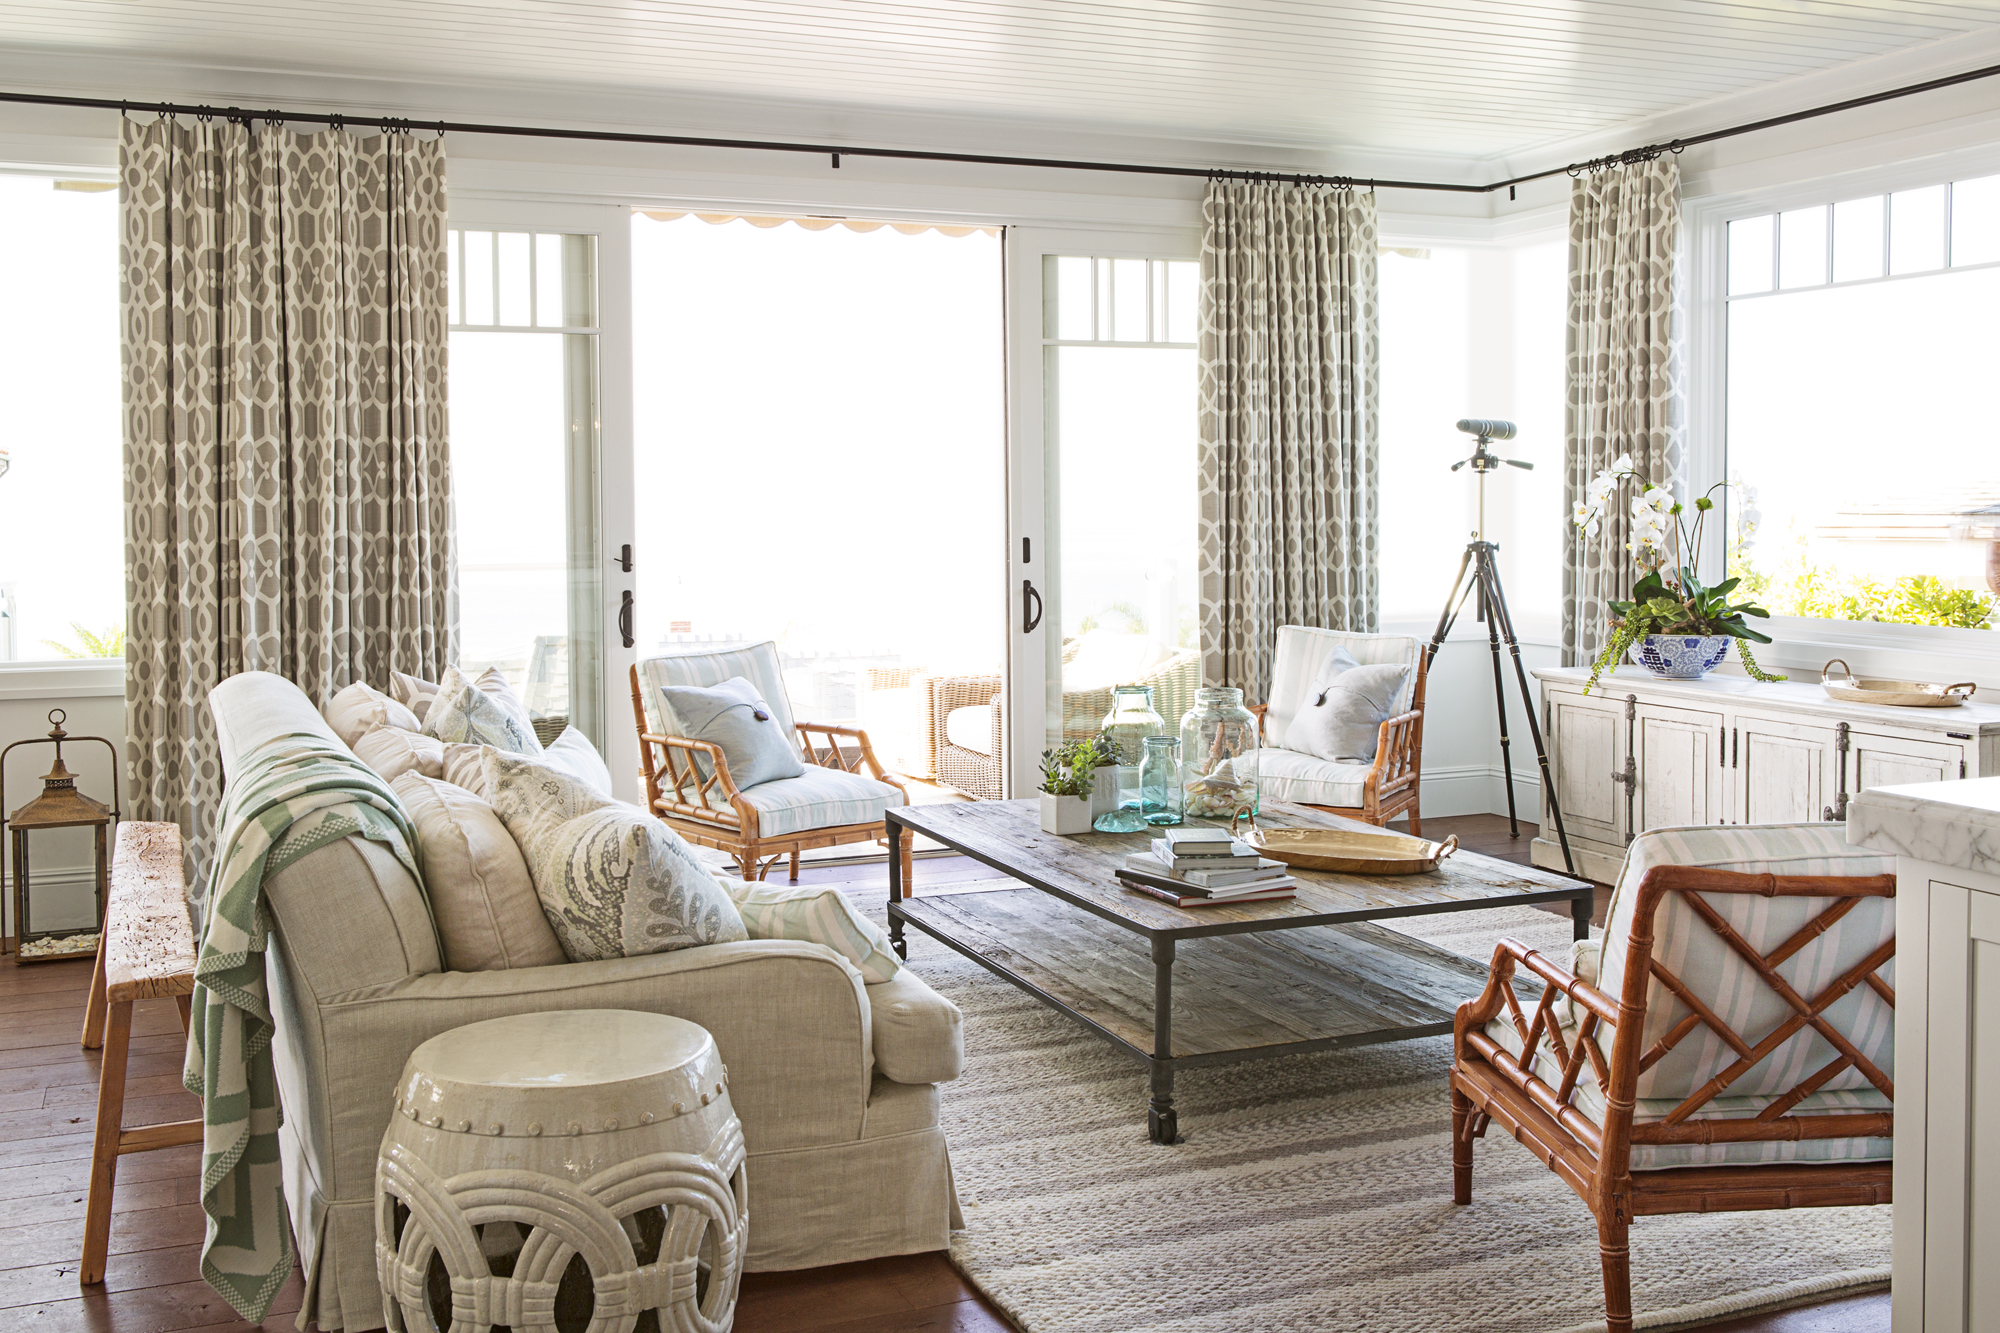 Hiasan dalaman ruang tamu gaya santai sesuai untuk rumah tepi pantai dengan langsir bercorak